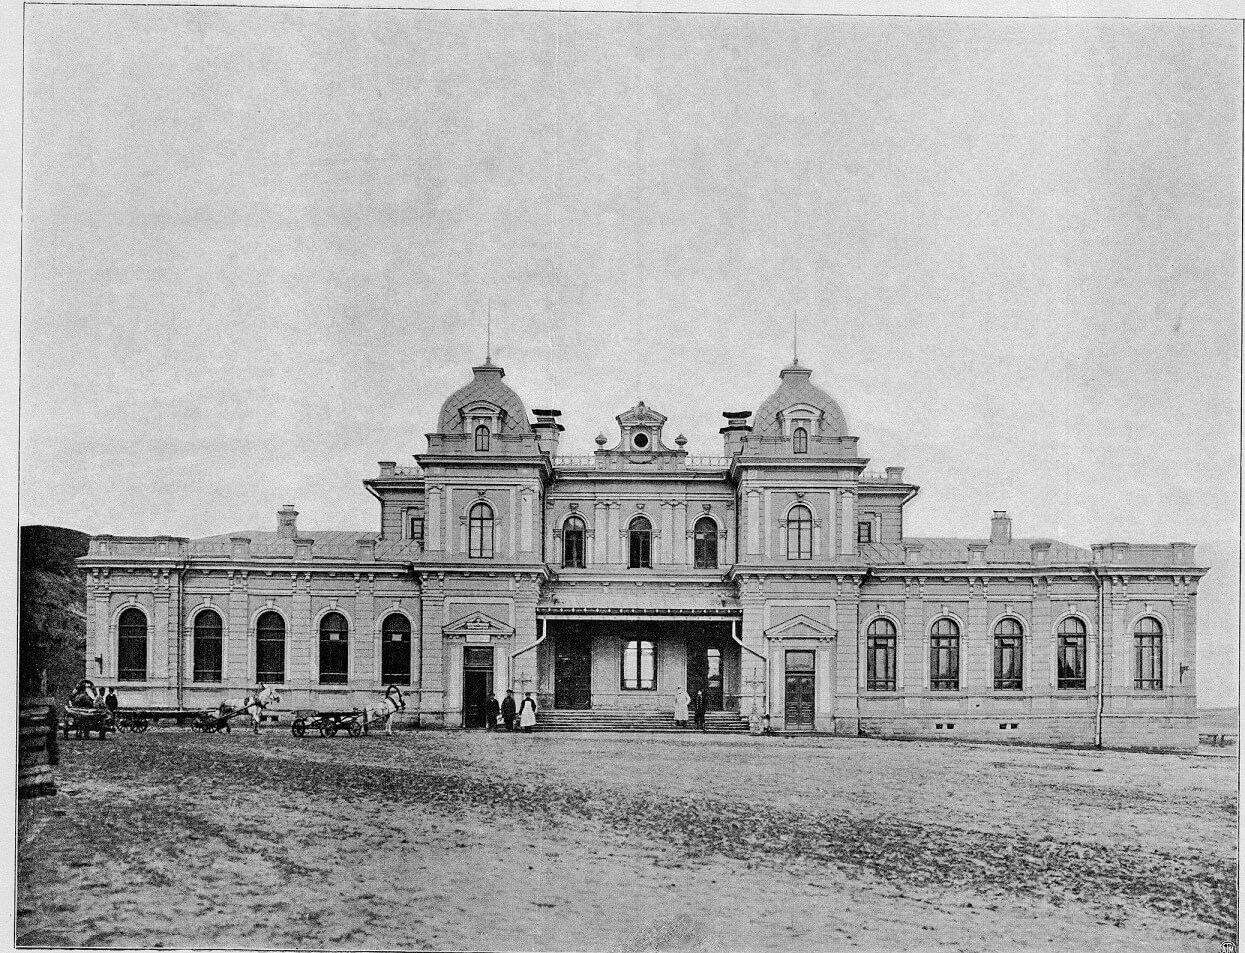 Ромодановский вокзал